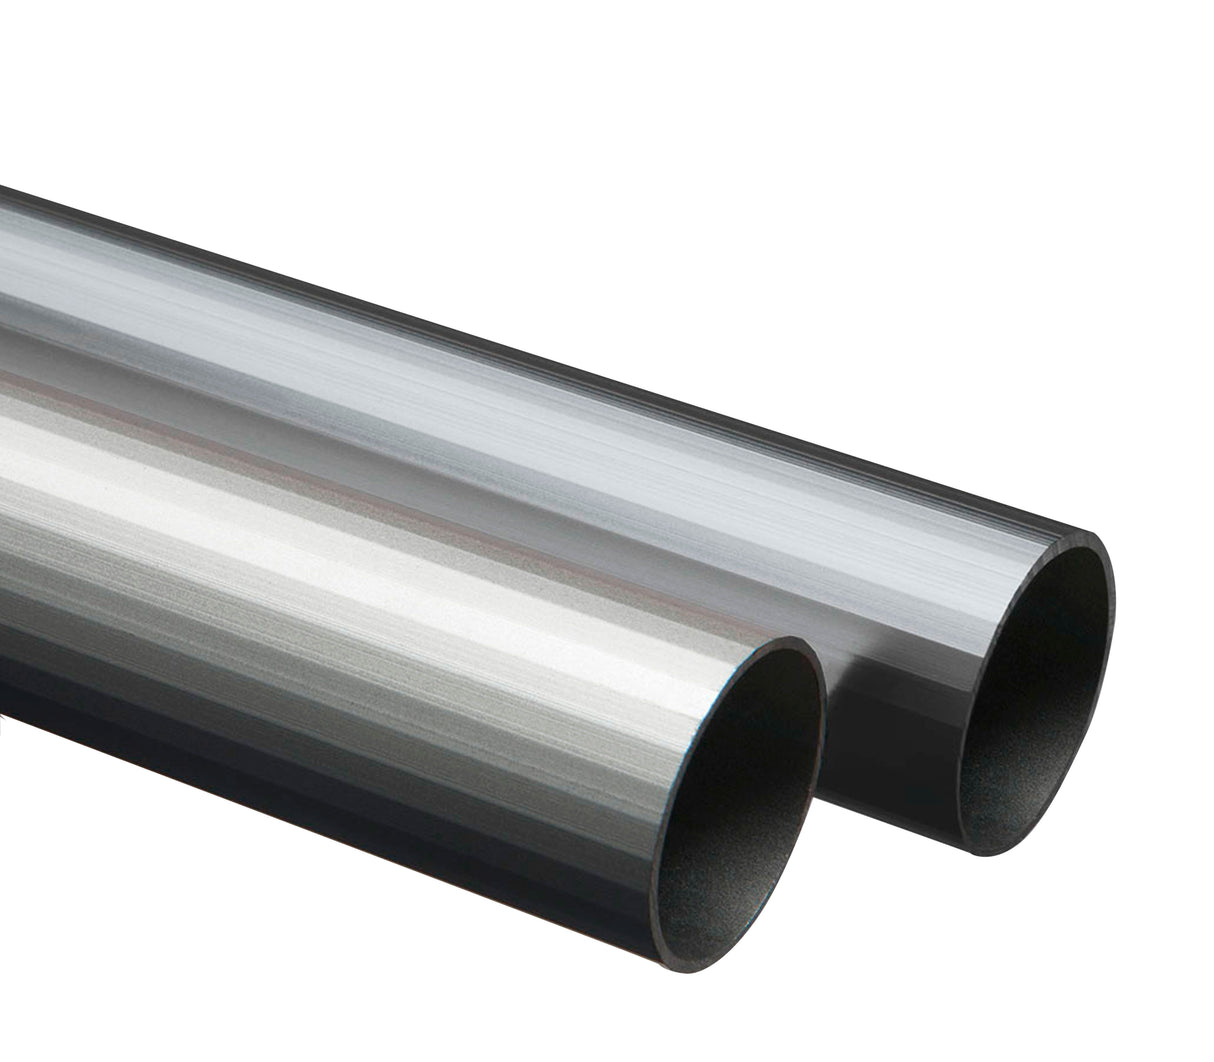 Tubo redondo de aluminio 10mm x 2m Tauro